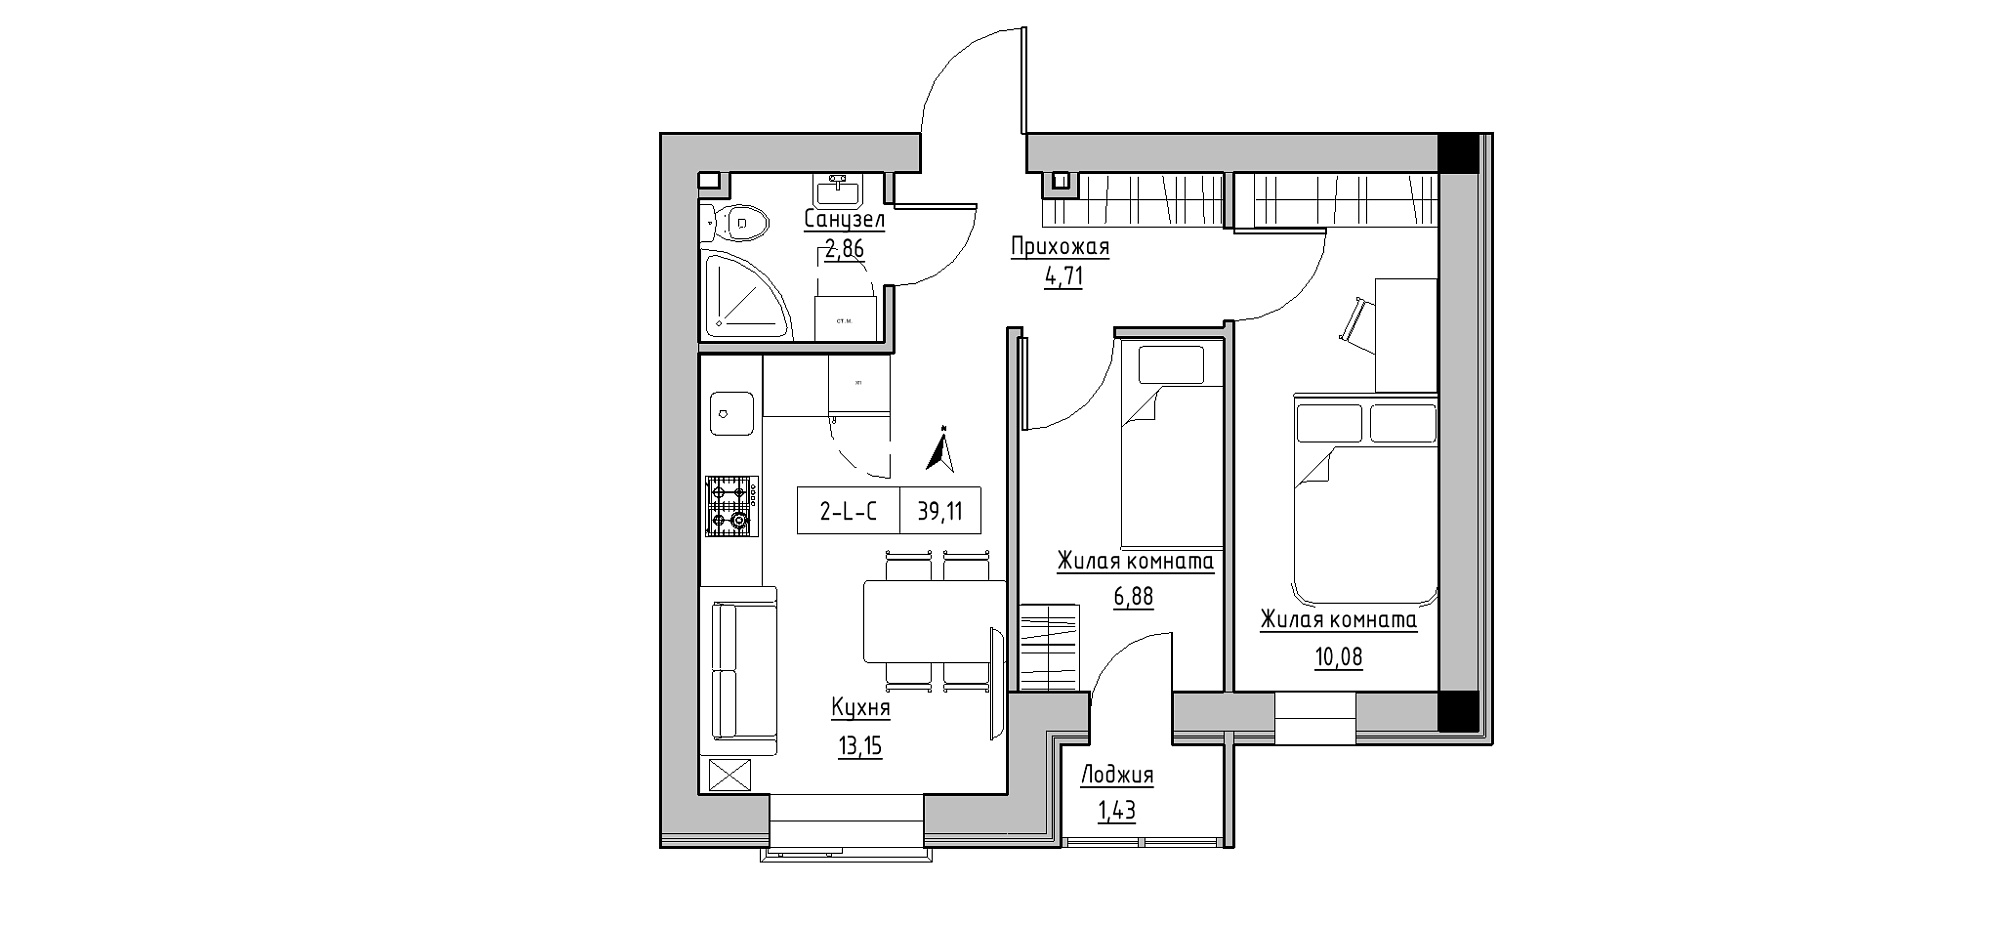 Планування 2-к квартира площею 39.11м2, KS-020-01/0005.